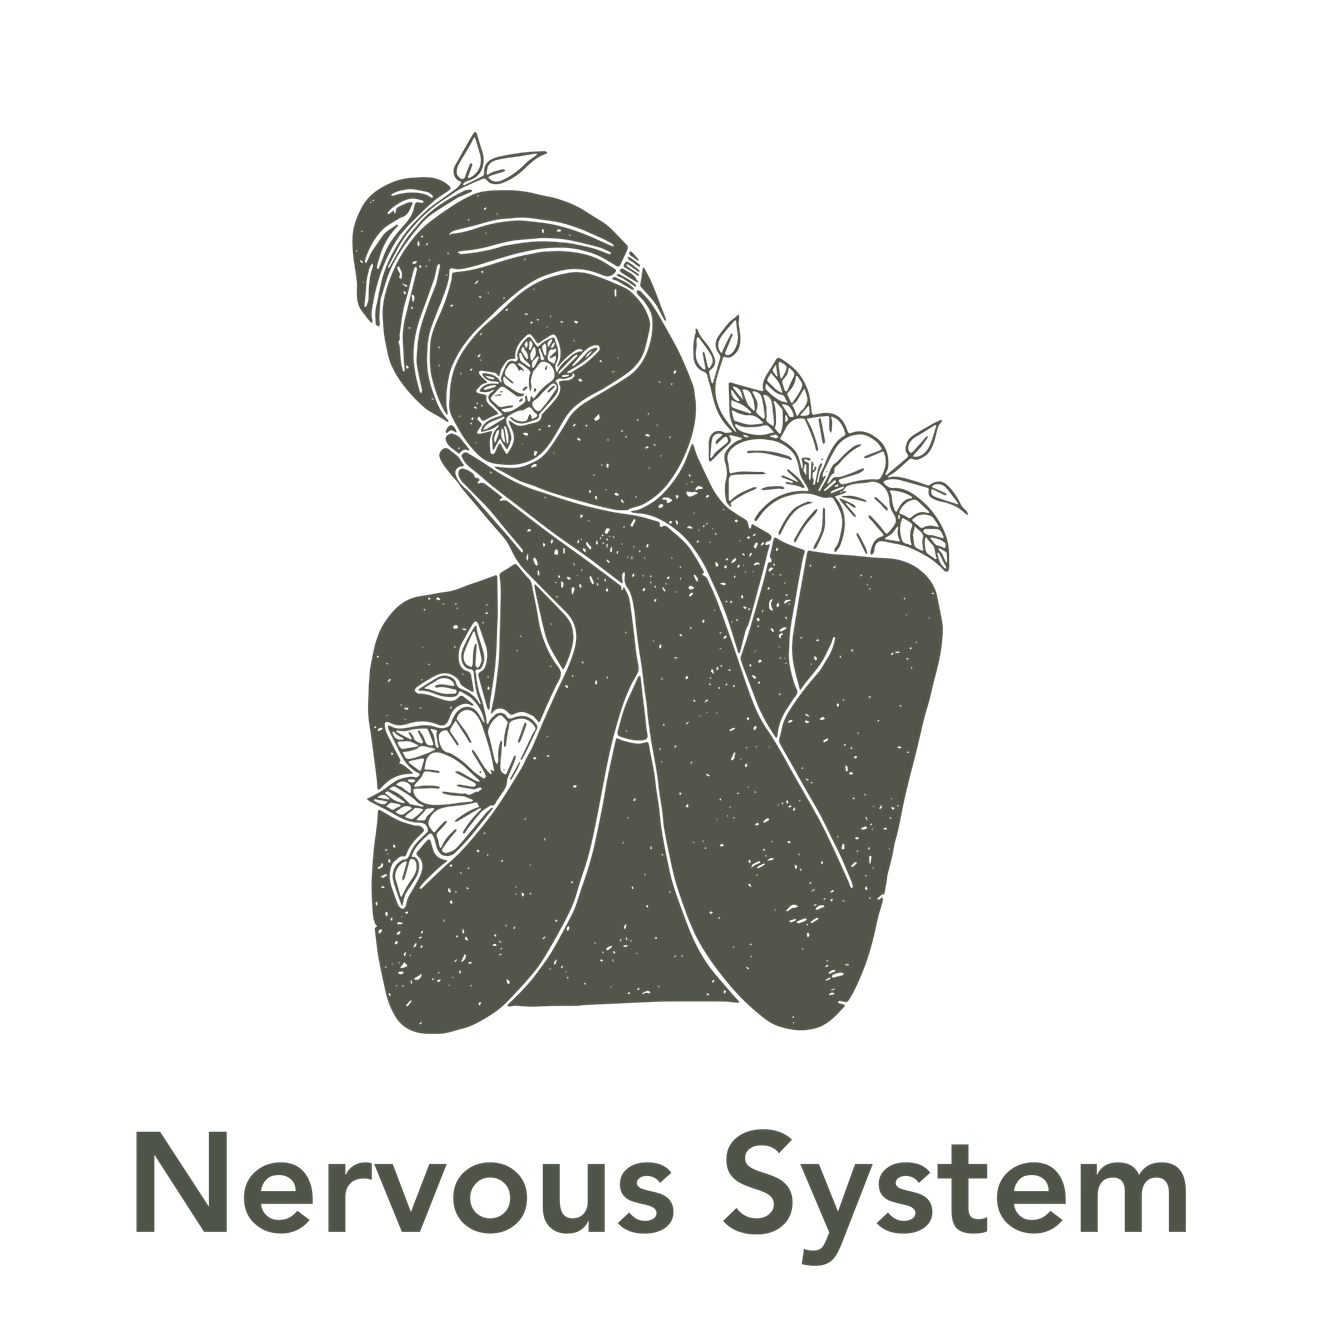 SubLuna Illustration - Nervous System